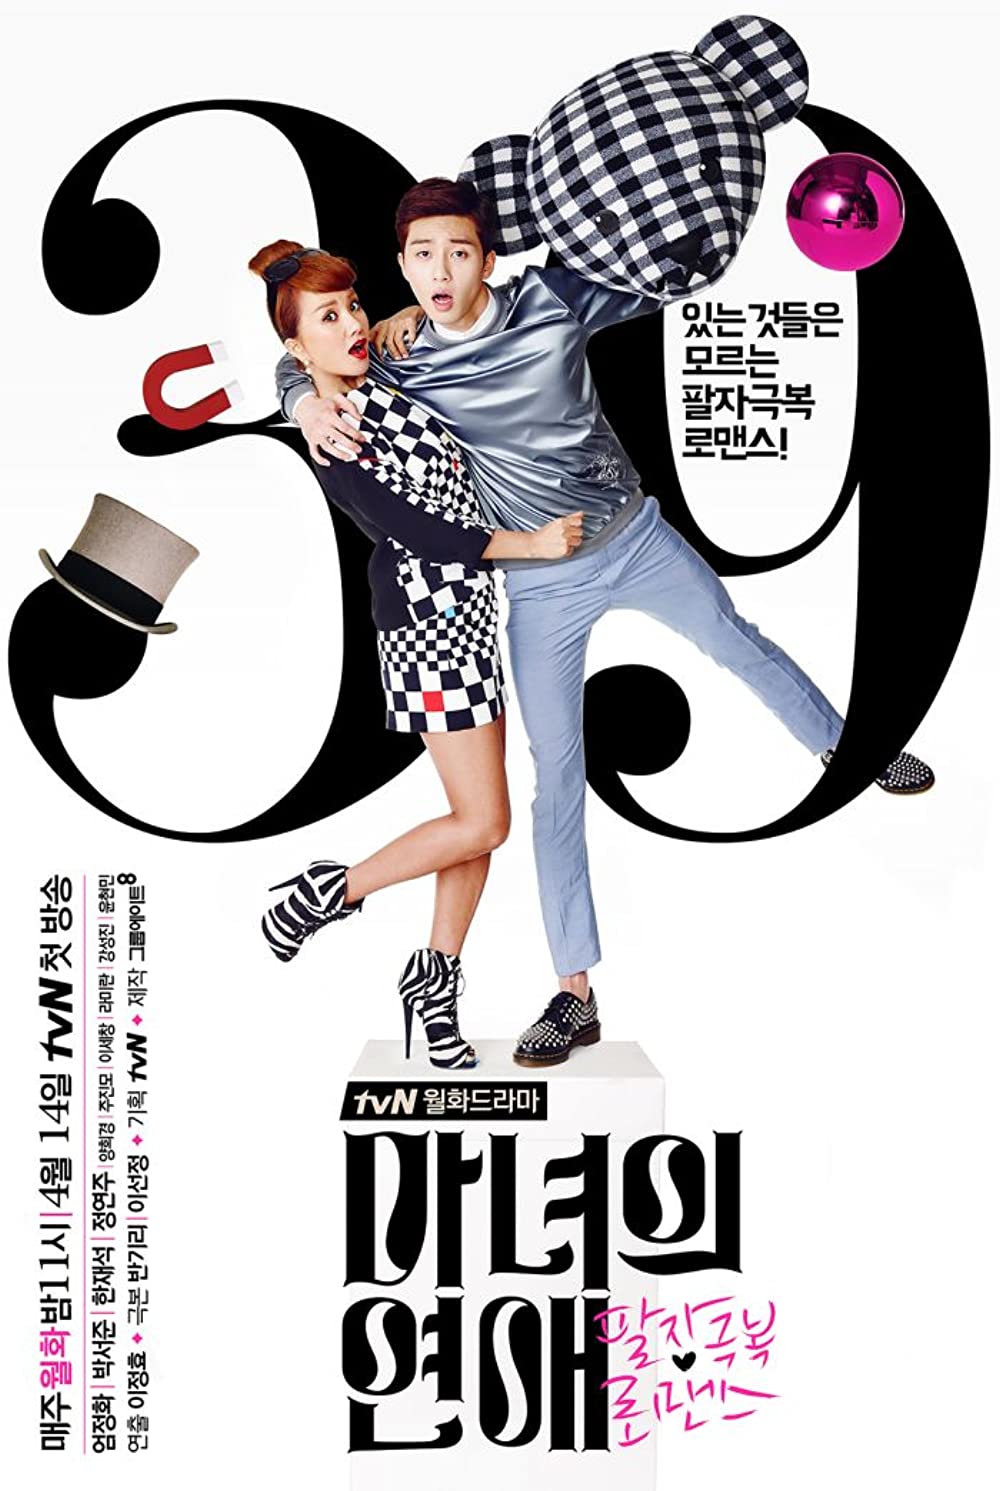 11 Drama Korea romantis kisah bos wanita, bikin karyawan salting